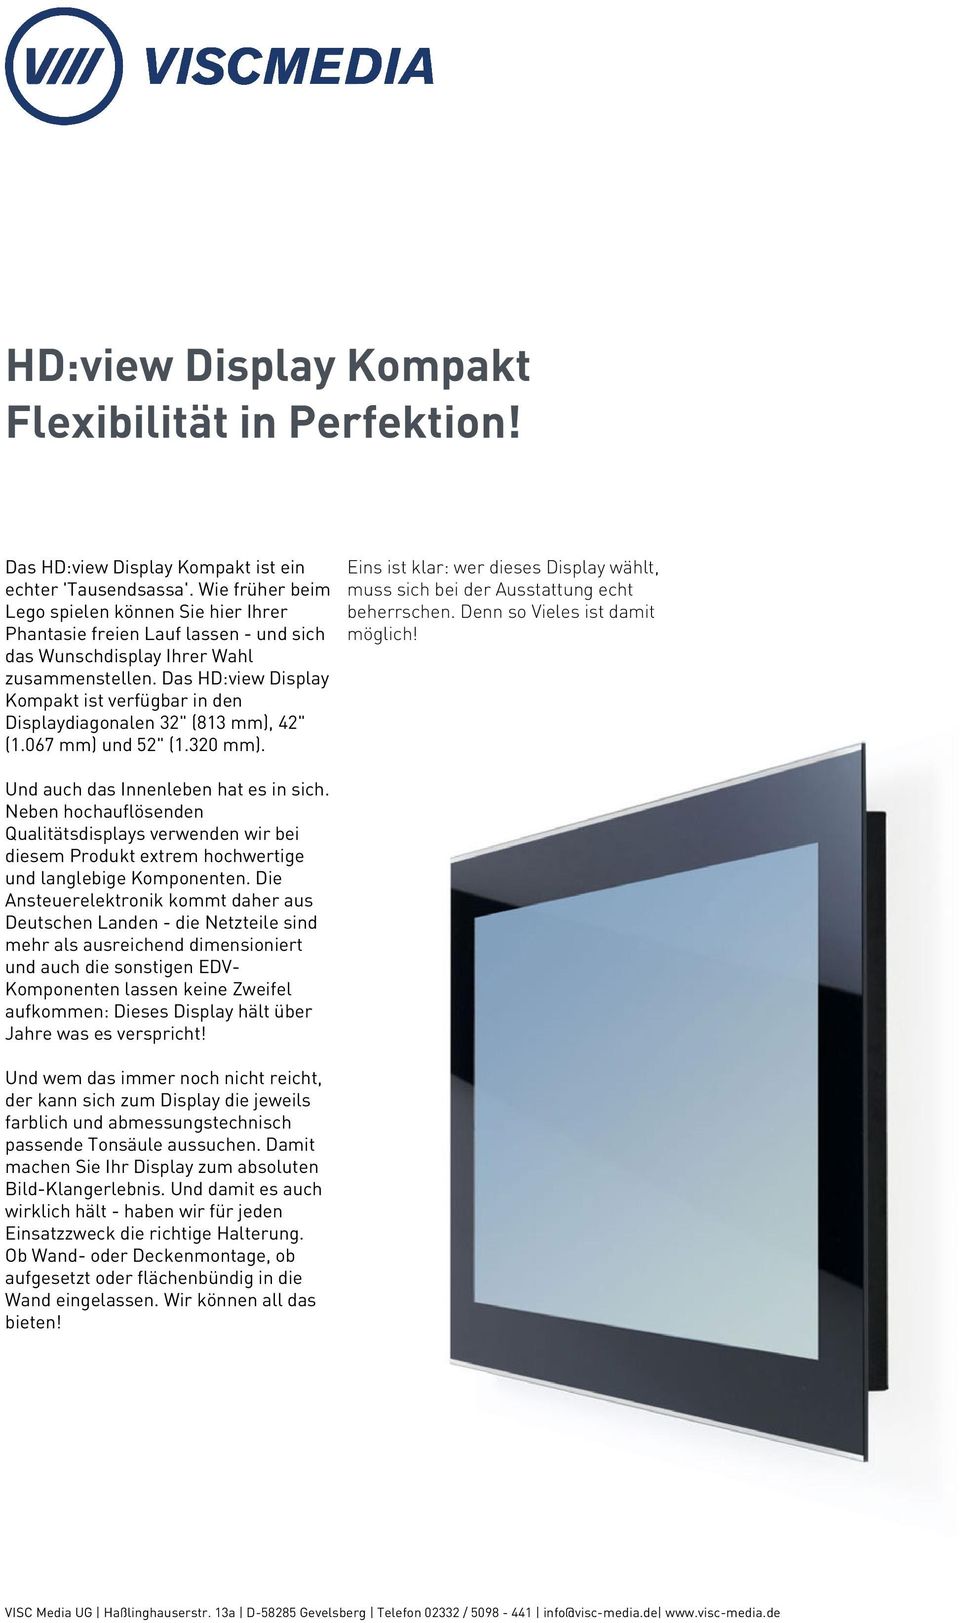 Das HD:view Display Kompakt ist verfügbar in den Displaydiagonalen 32" (813 mm), 42" (1.067 mm) und 52" (1.320 mm). Und auch das Innenleben hat es in sich.